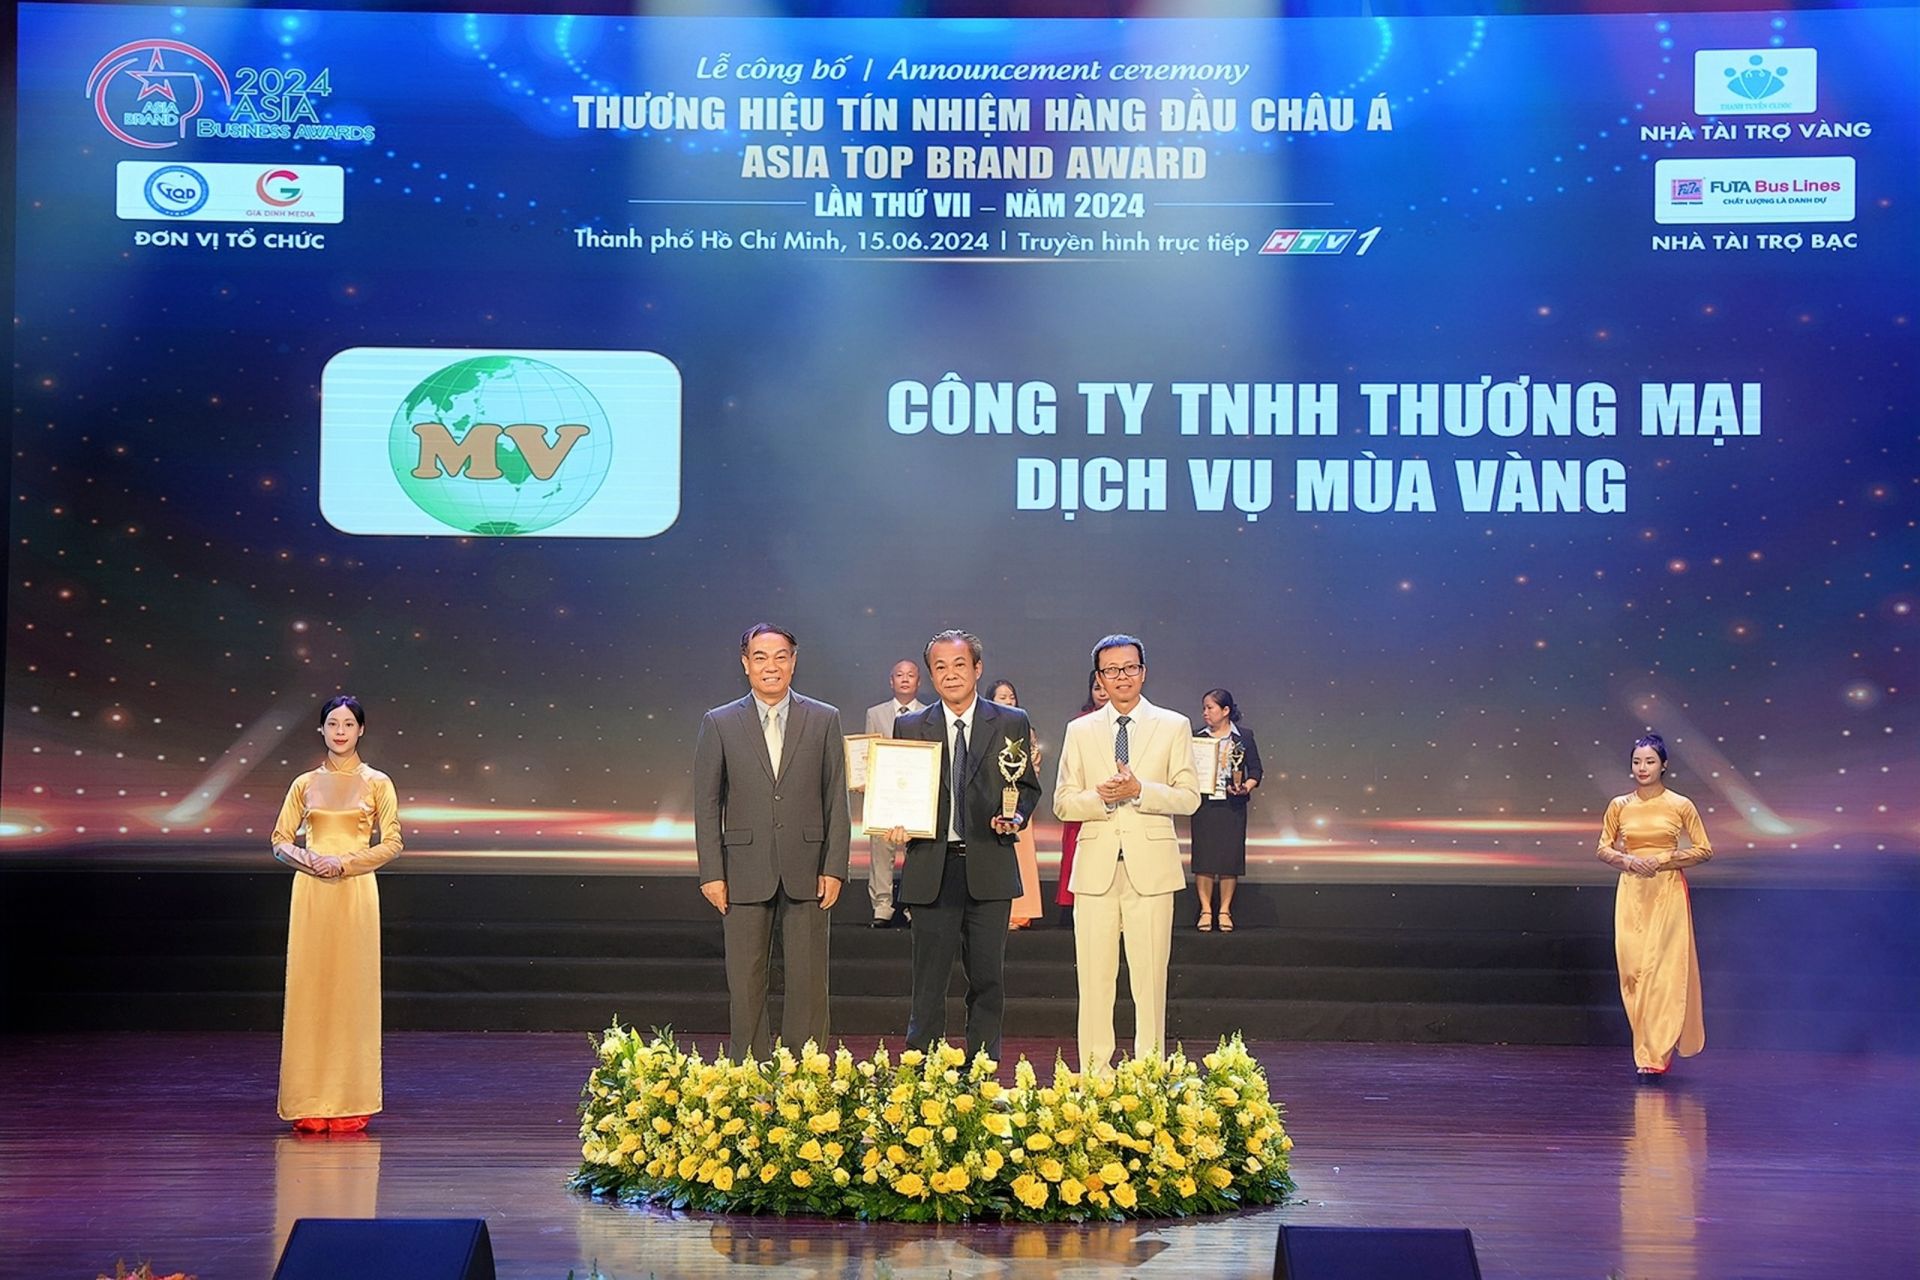 Ông Nguyễn Hoàng Dũng – Phó Giám đốc công ty  TNHH Thương mại Dịch vụ Mùa Vàng  thay mặt công ty nhận giải thưởng